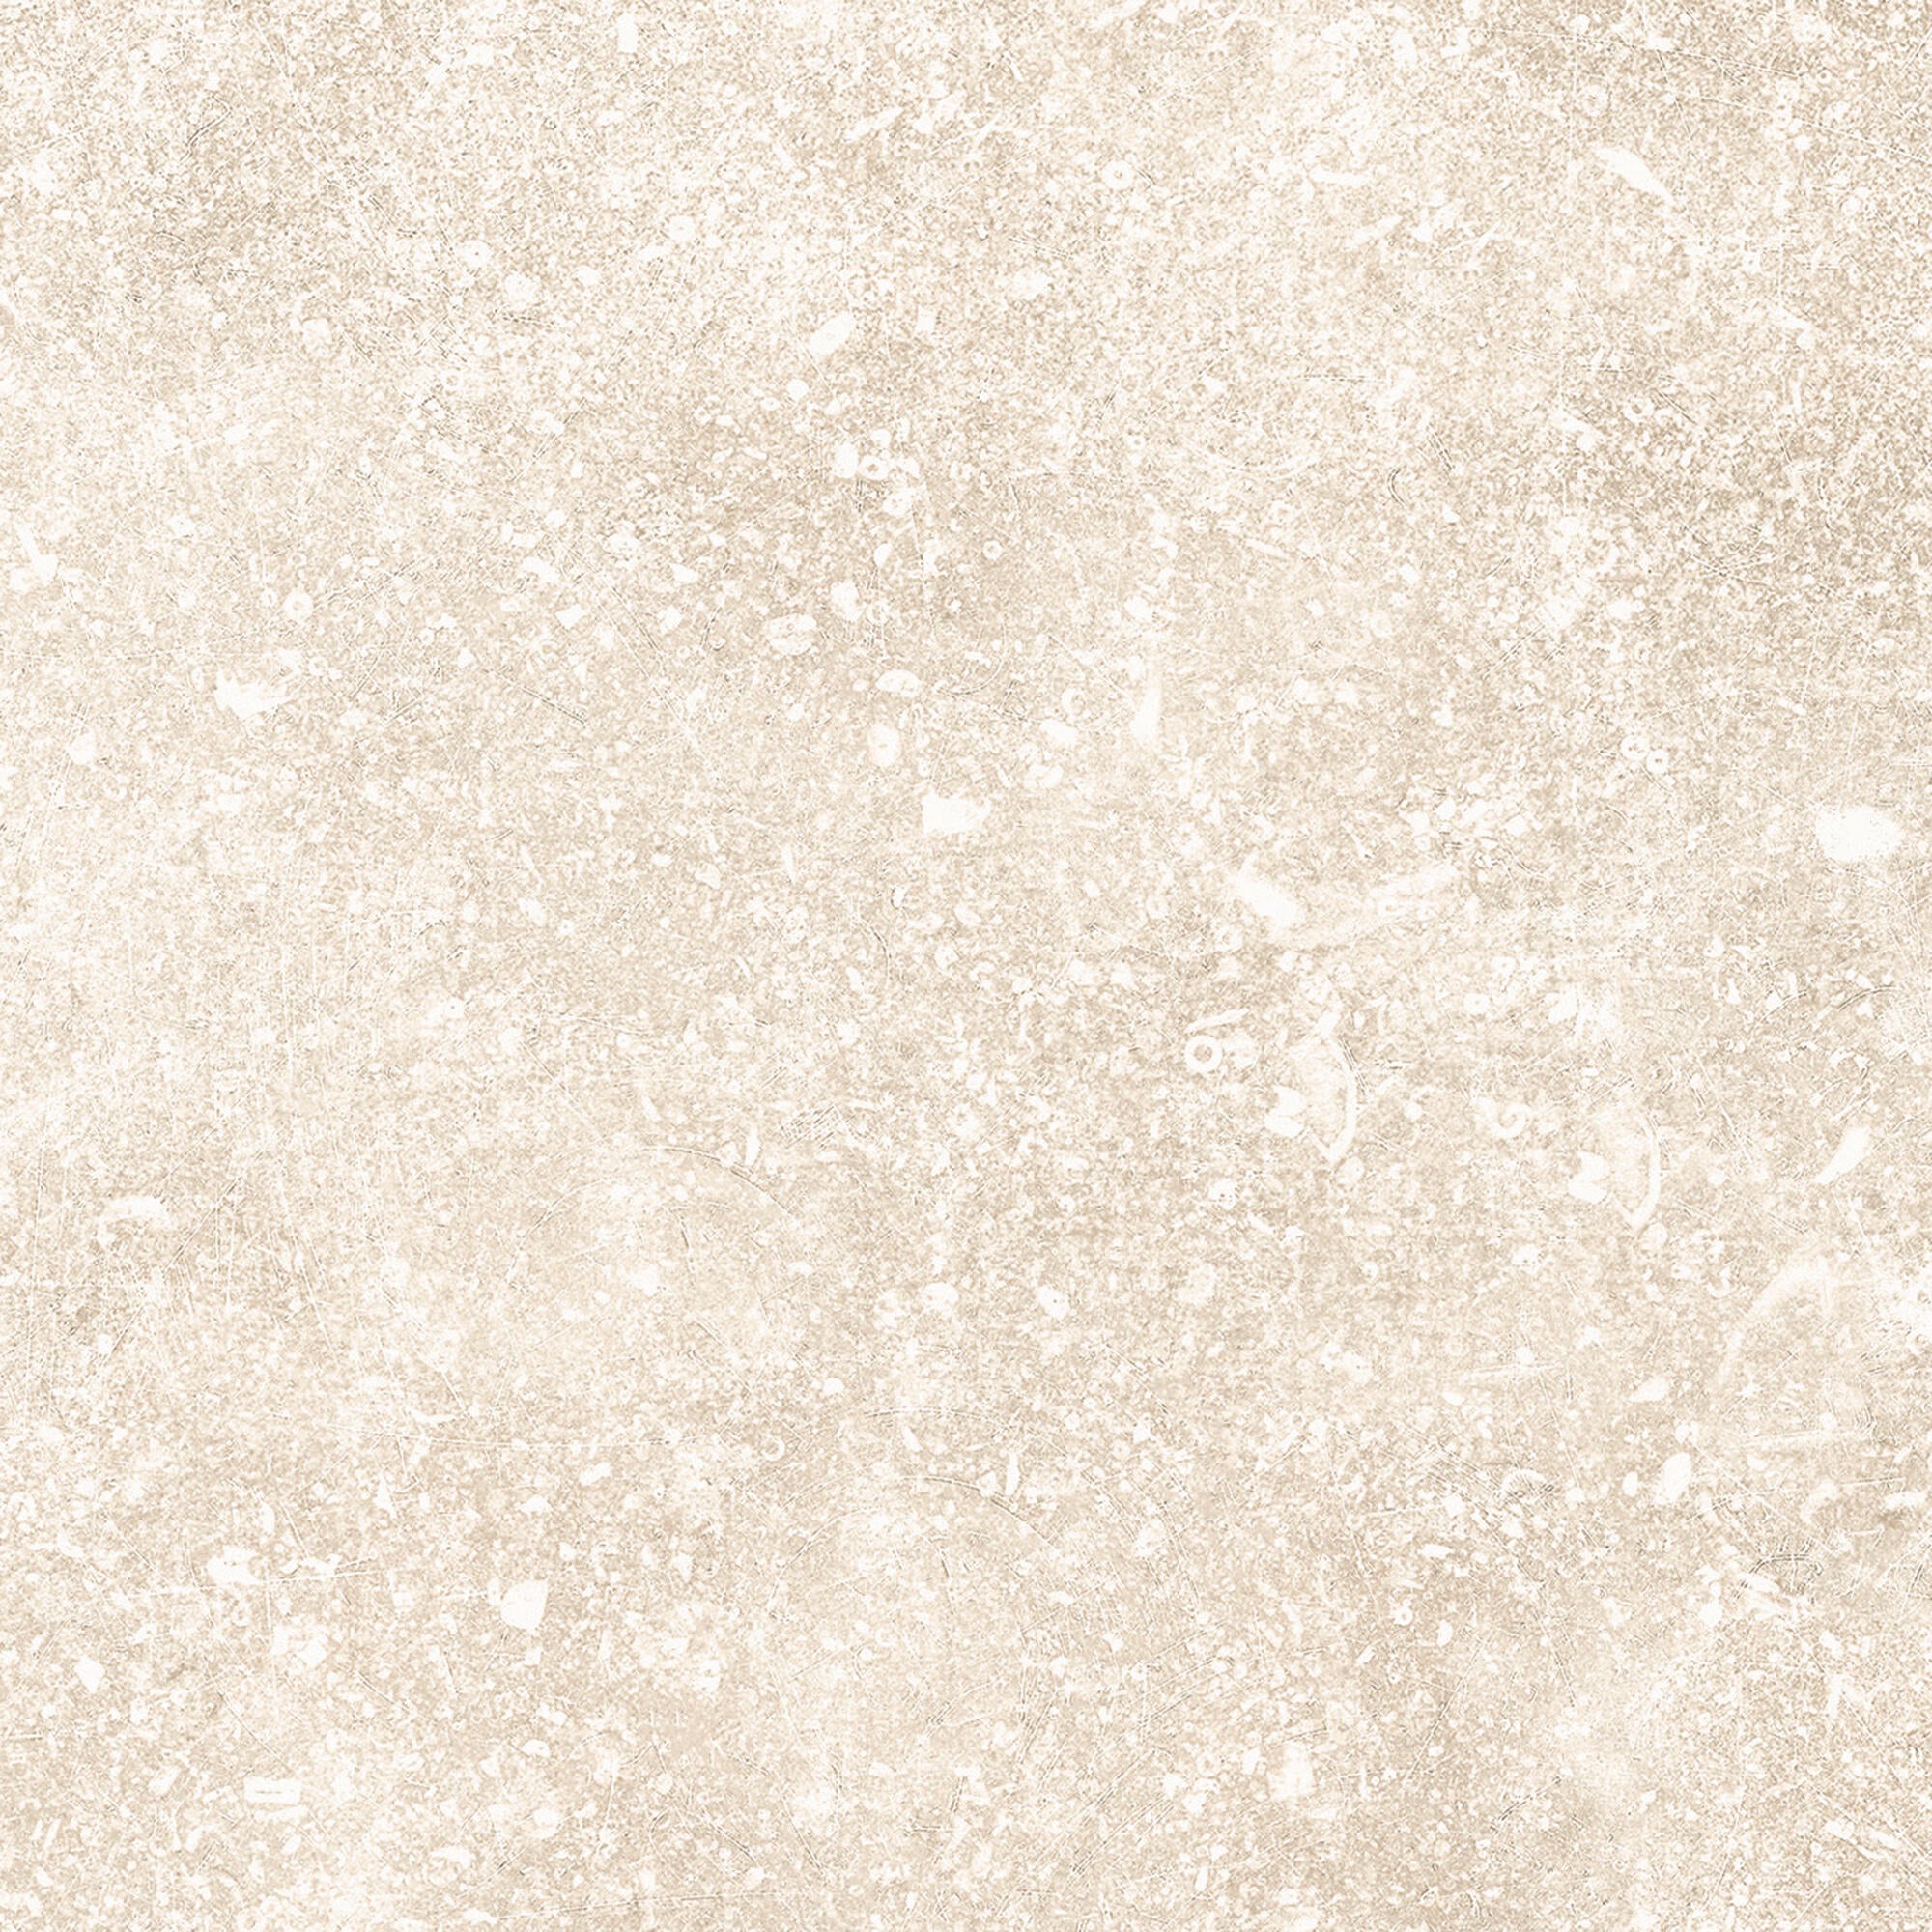 Suelo cerámico ardenas efecto piedra marfil 16.25x16.25 cm c3